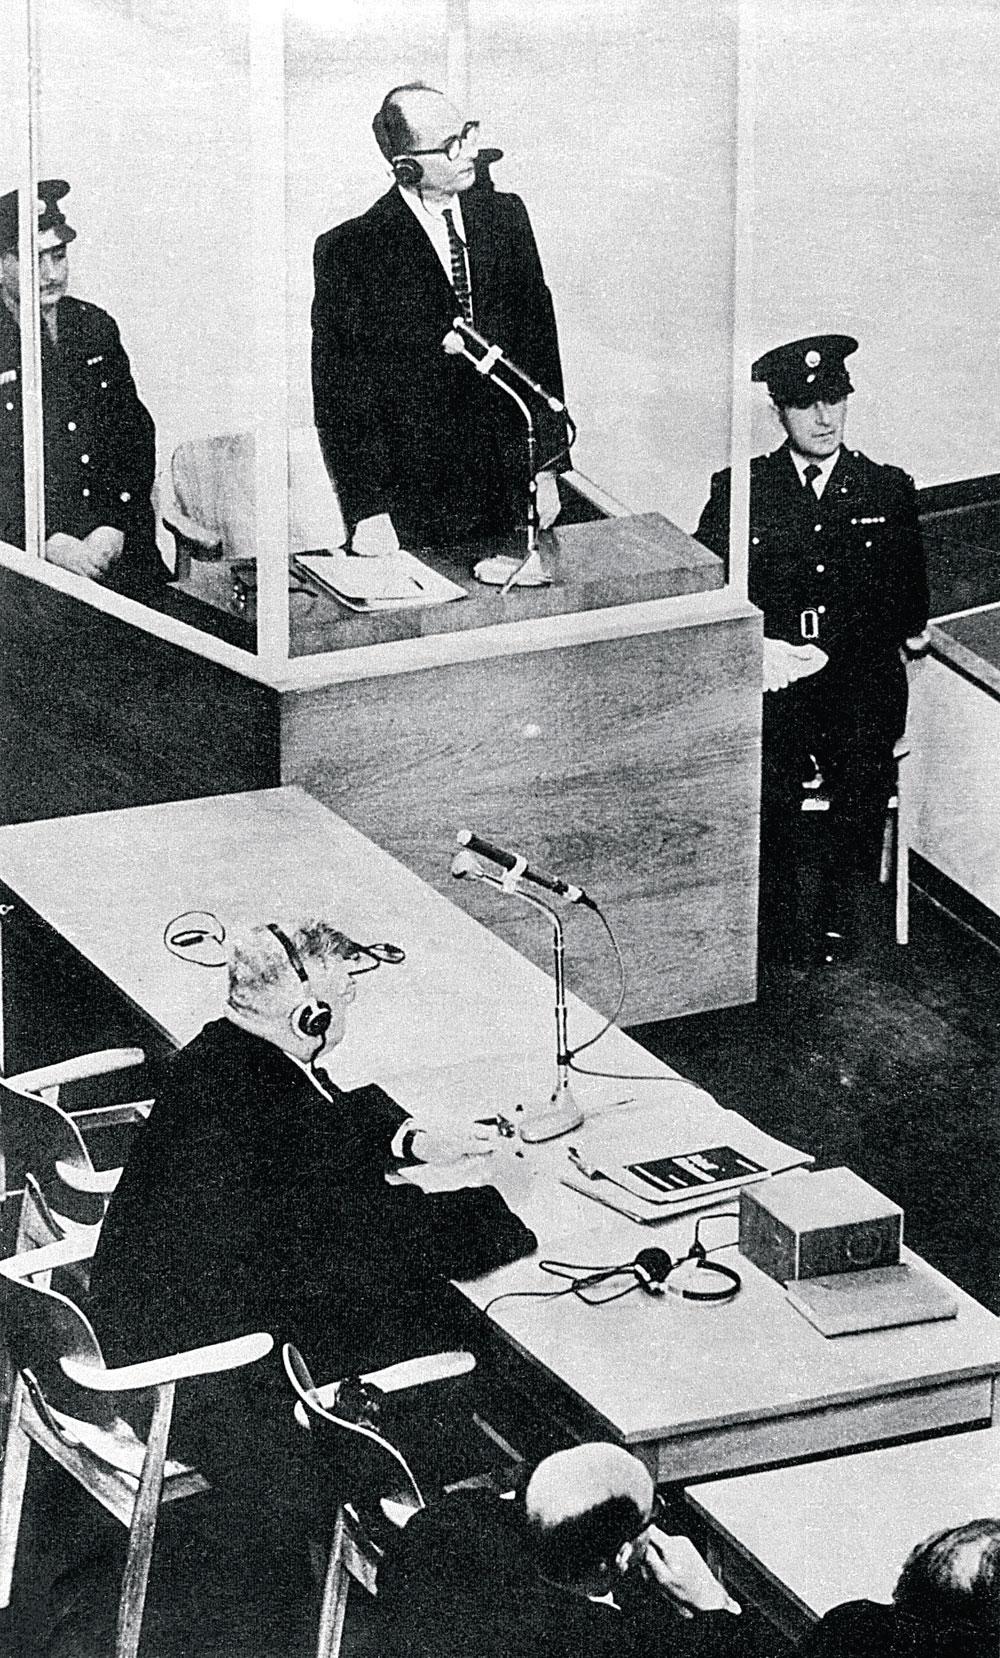 Adolf Eichmann De hooggeplaatste nazi vluchtte naar Argentinië maar werd in 1960 door de Mossad ontvoerd.